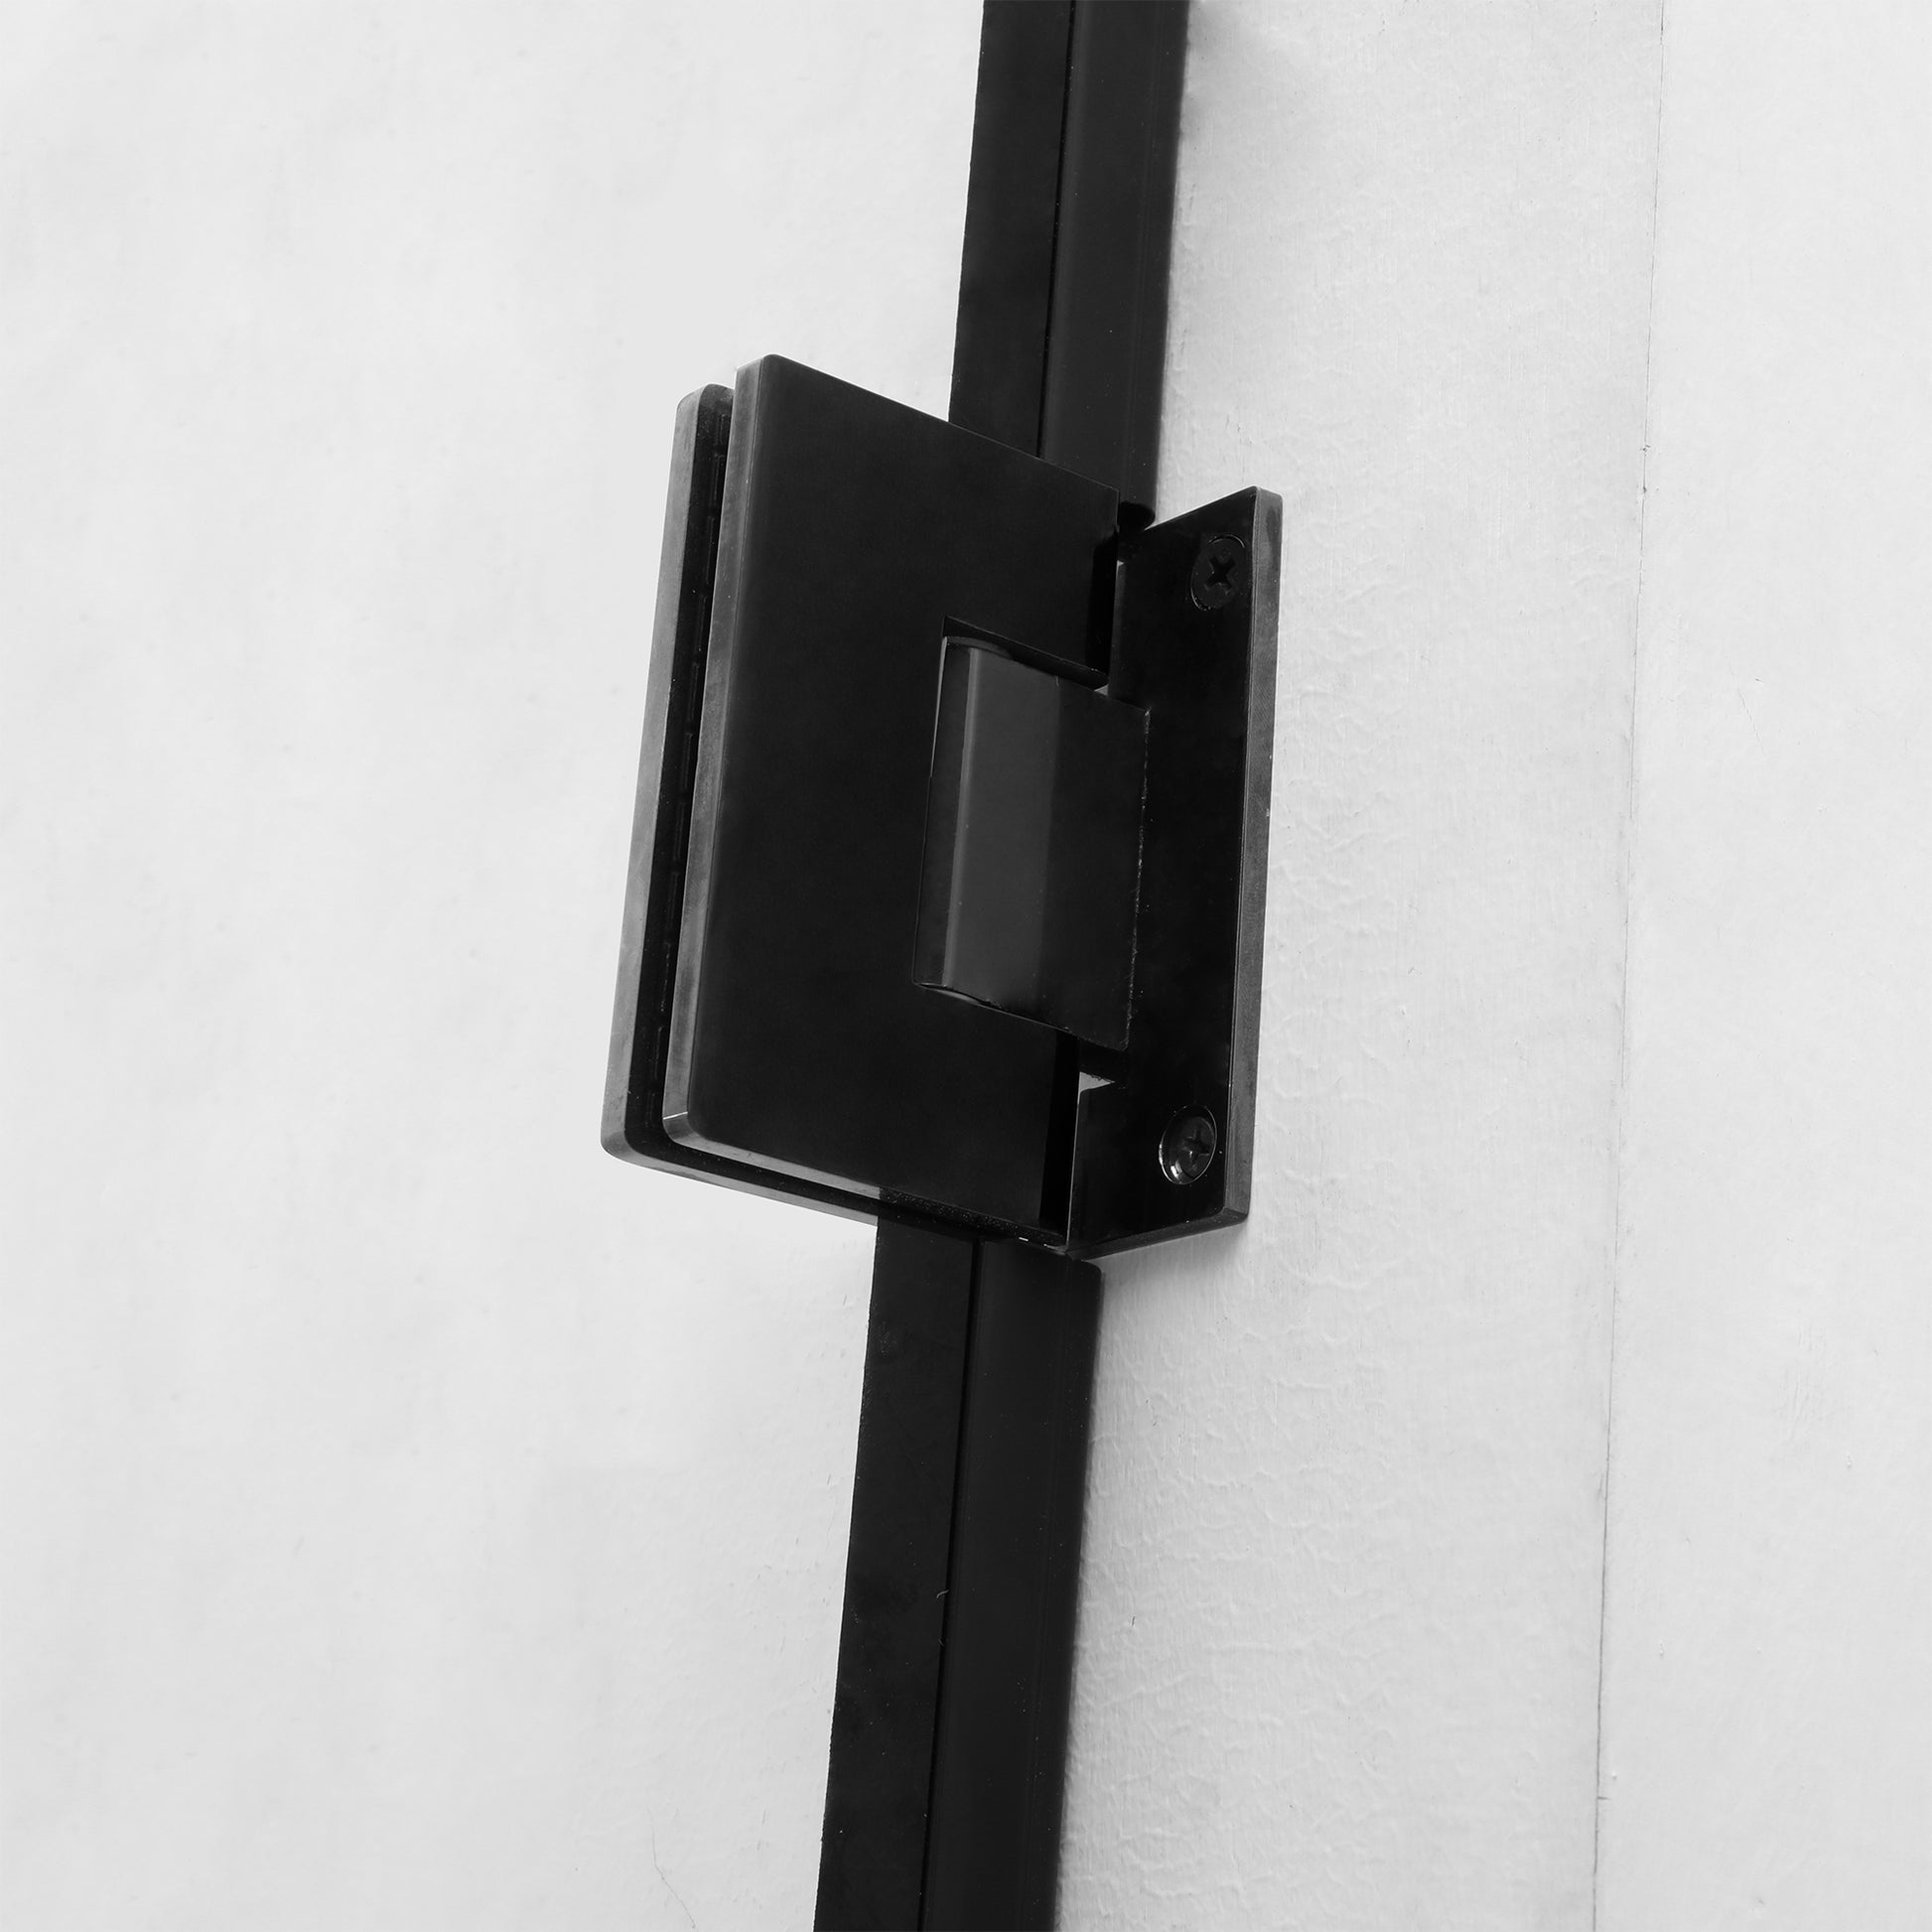 Shower Door 40" W x 72" H Pivot Frameless Shower Door matte black-glass